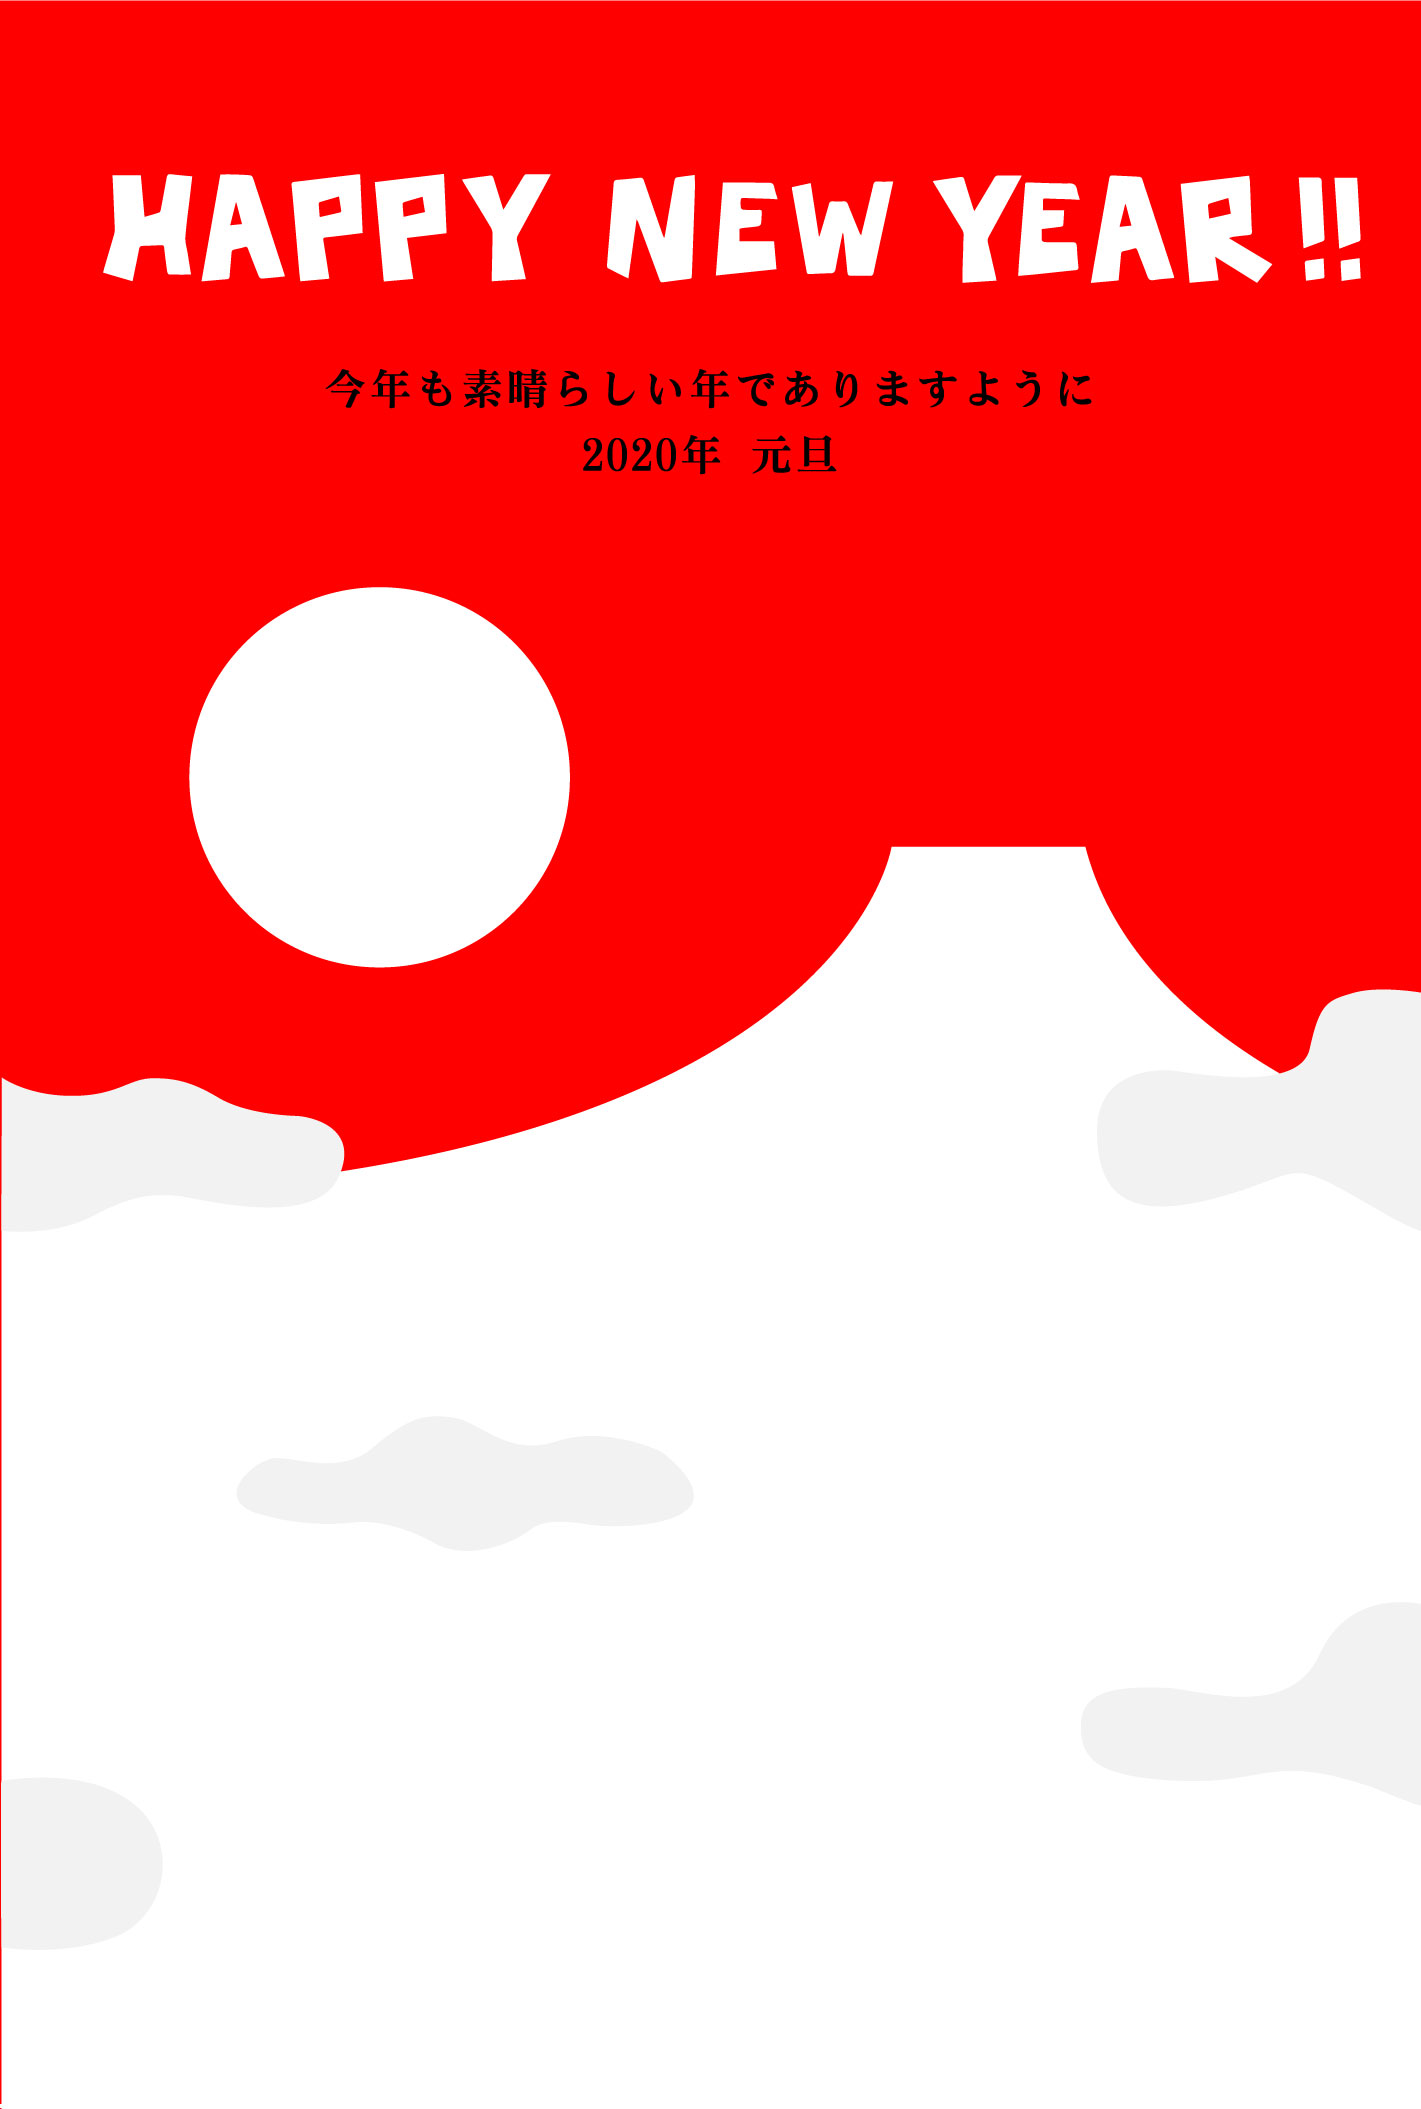 「happy-new-year」赤い富士山と初日の出のシルエットの無料年賀状イラスト素材です-挨拶文あり